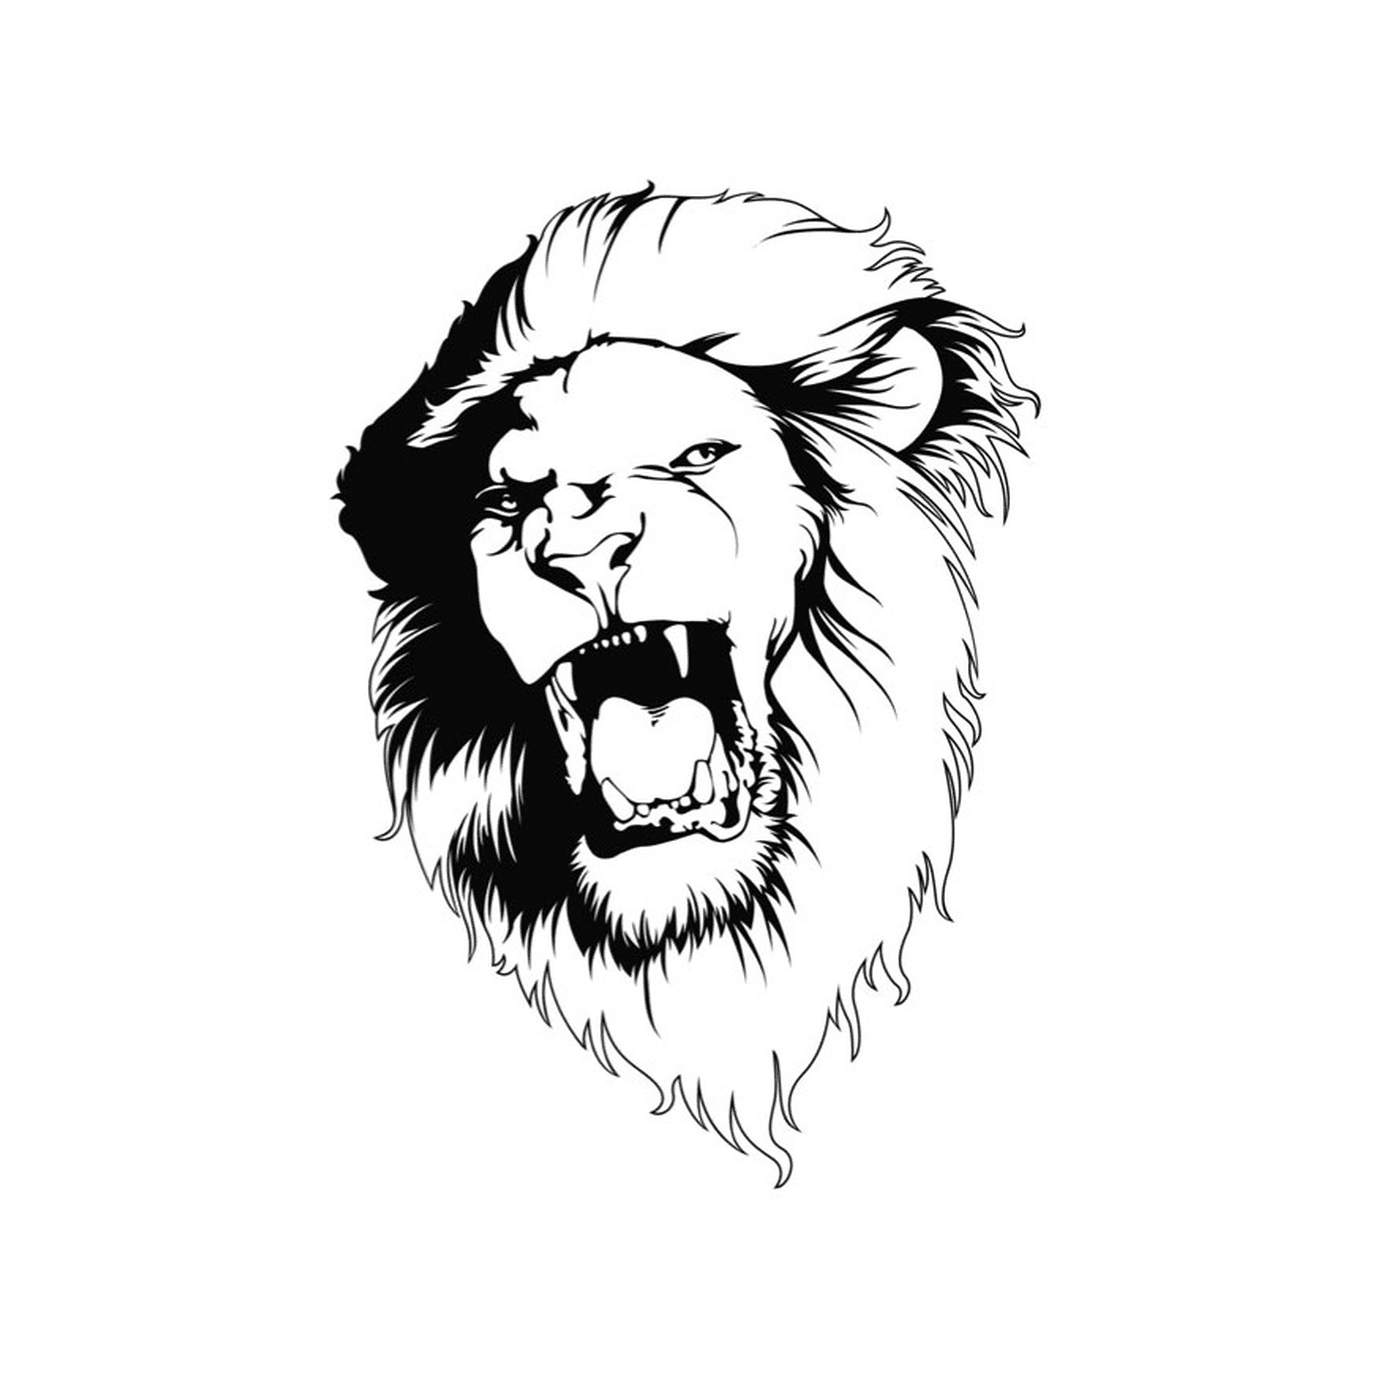   La tête majestueuse d'un lion 